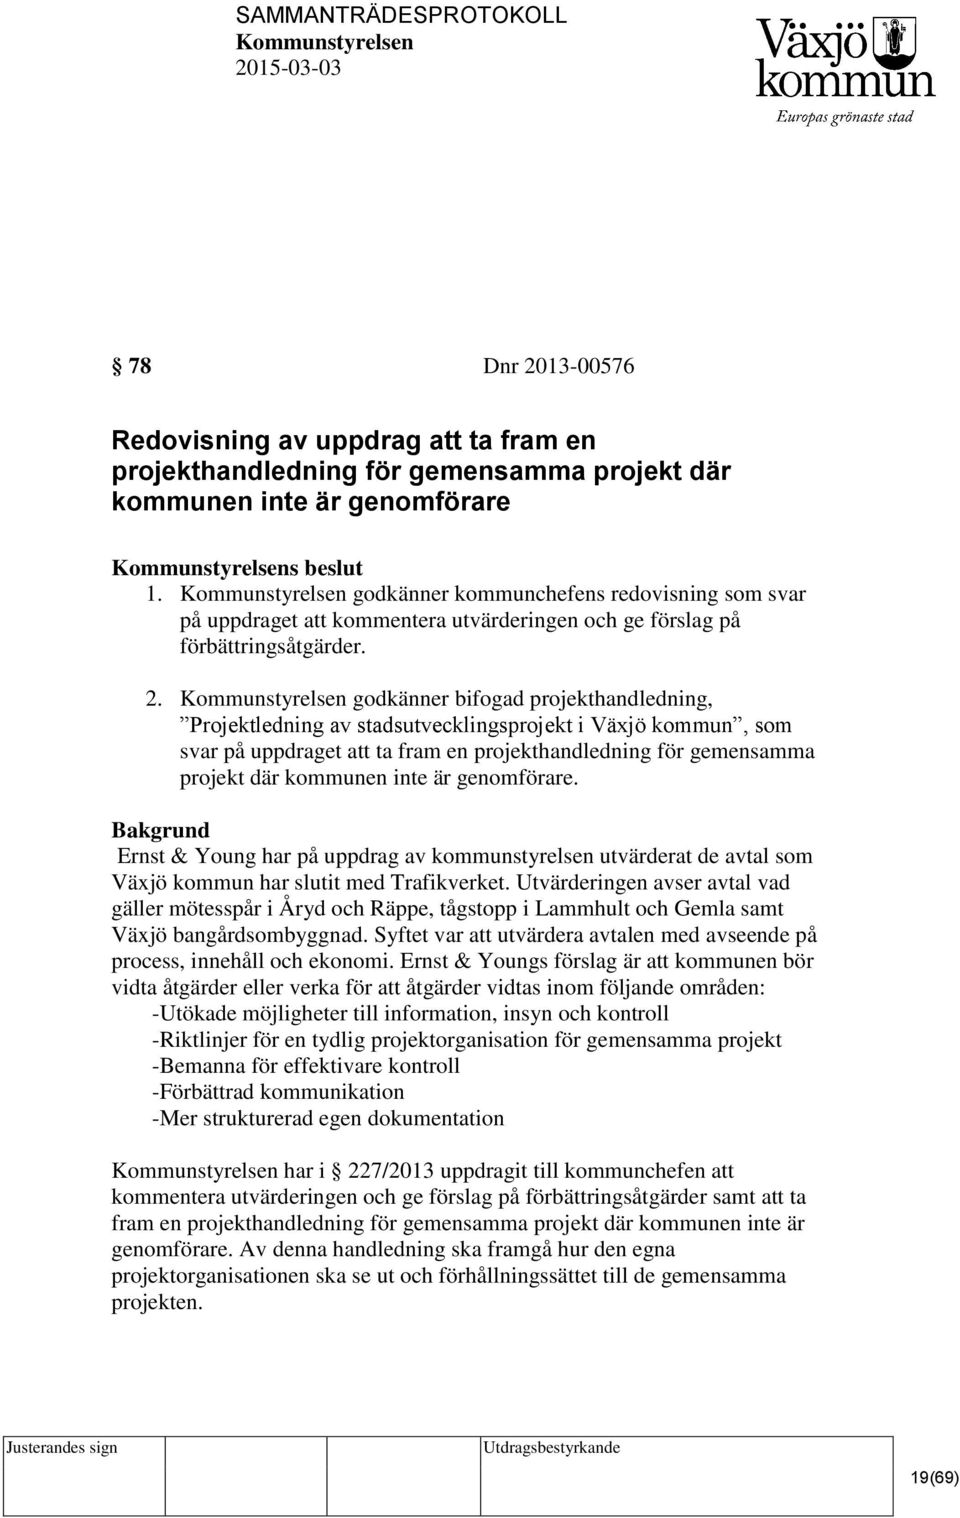 godkänner bifogad projekthandledning, Projektledning av stadsutvecklingsprojekt i Växjö kommun, som svar på uppdraget att ta fram en projekthandledning för gemensamma projekt där kommunen inte är